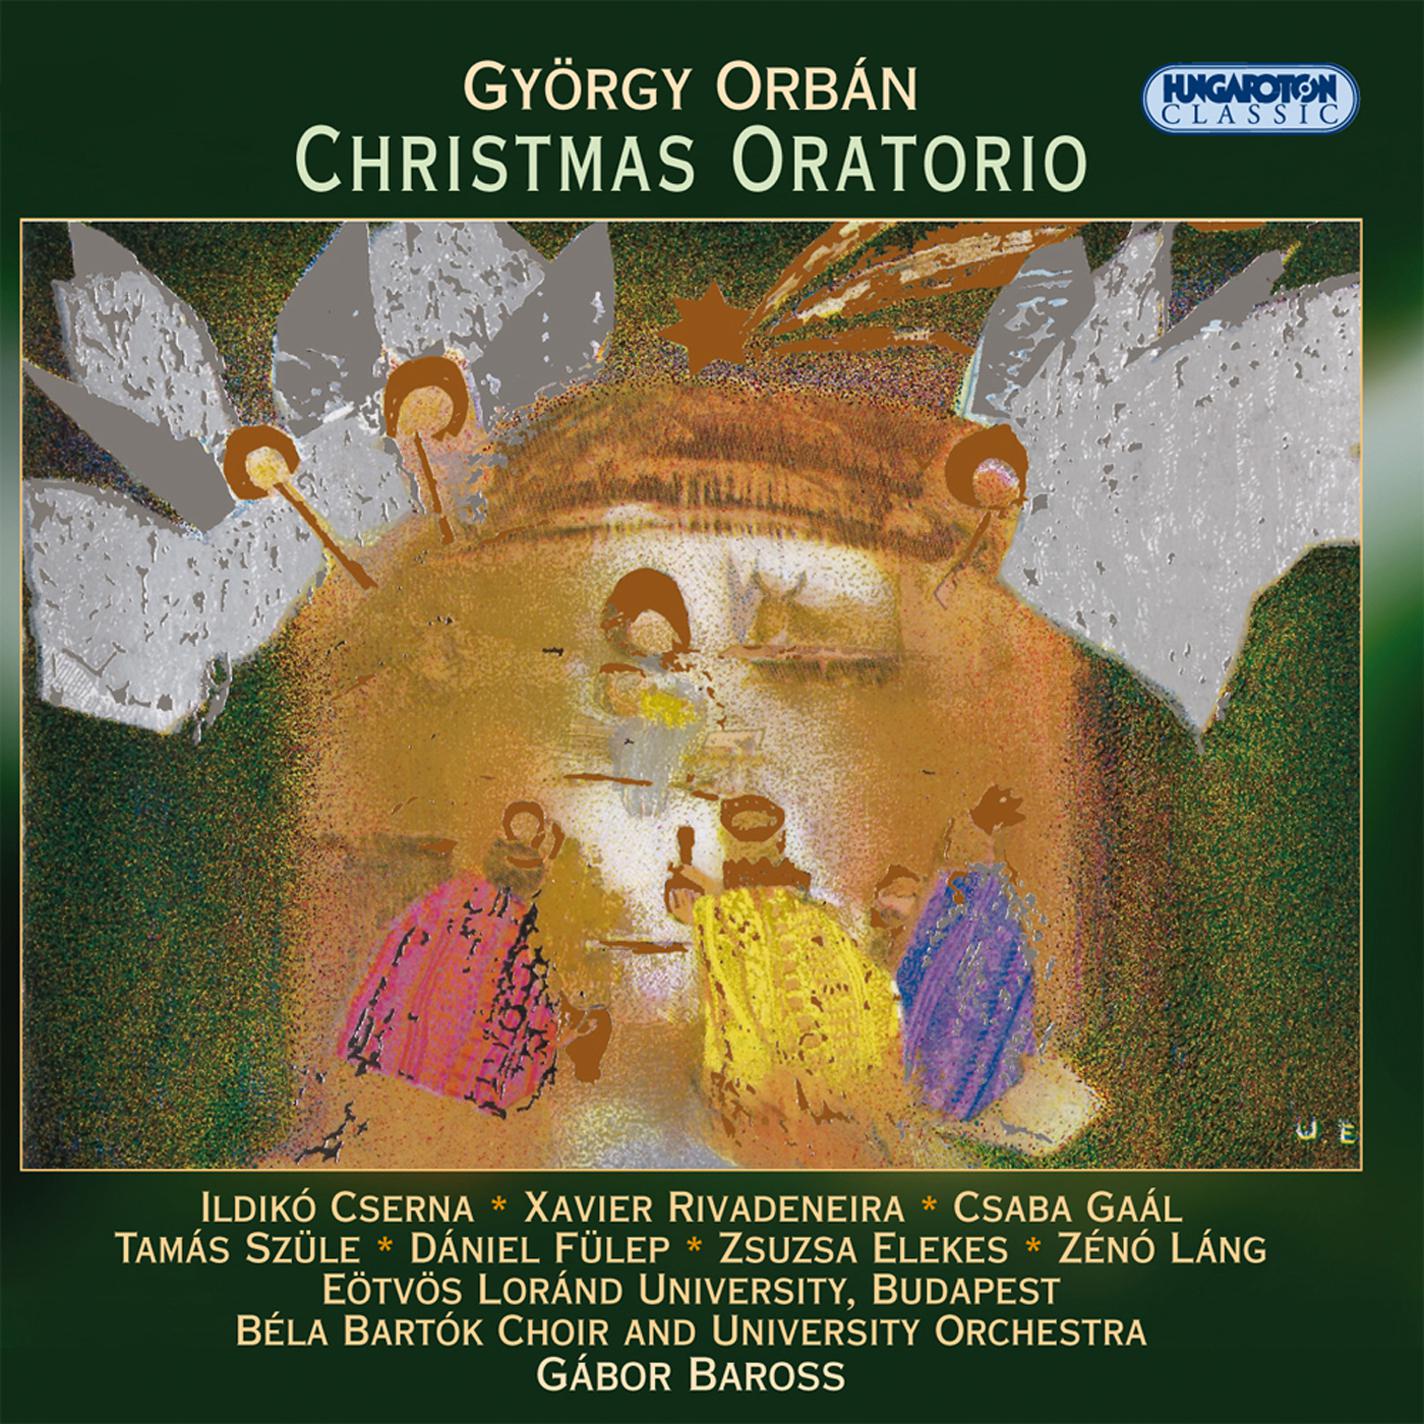 Ildiko Cserna - Christmas Oratorio:Magnificat: Magasztalja az en lelkem az Urat! (My soul doth magnify the Lord) [Mary]